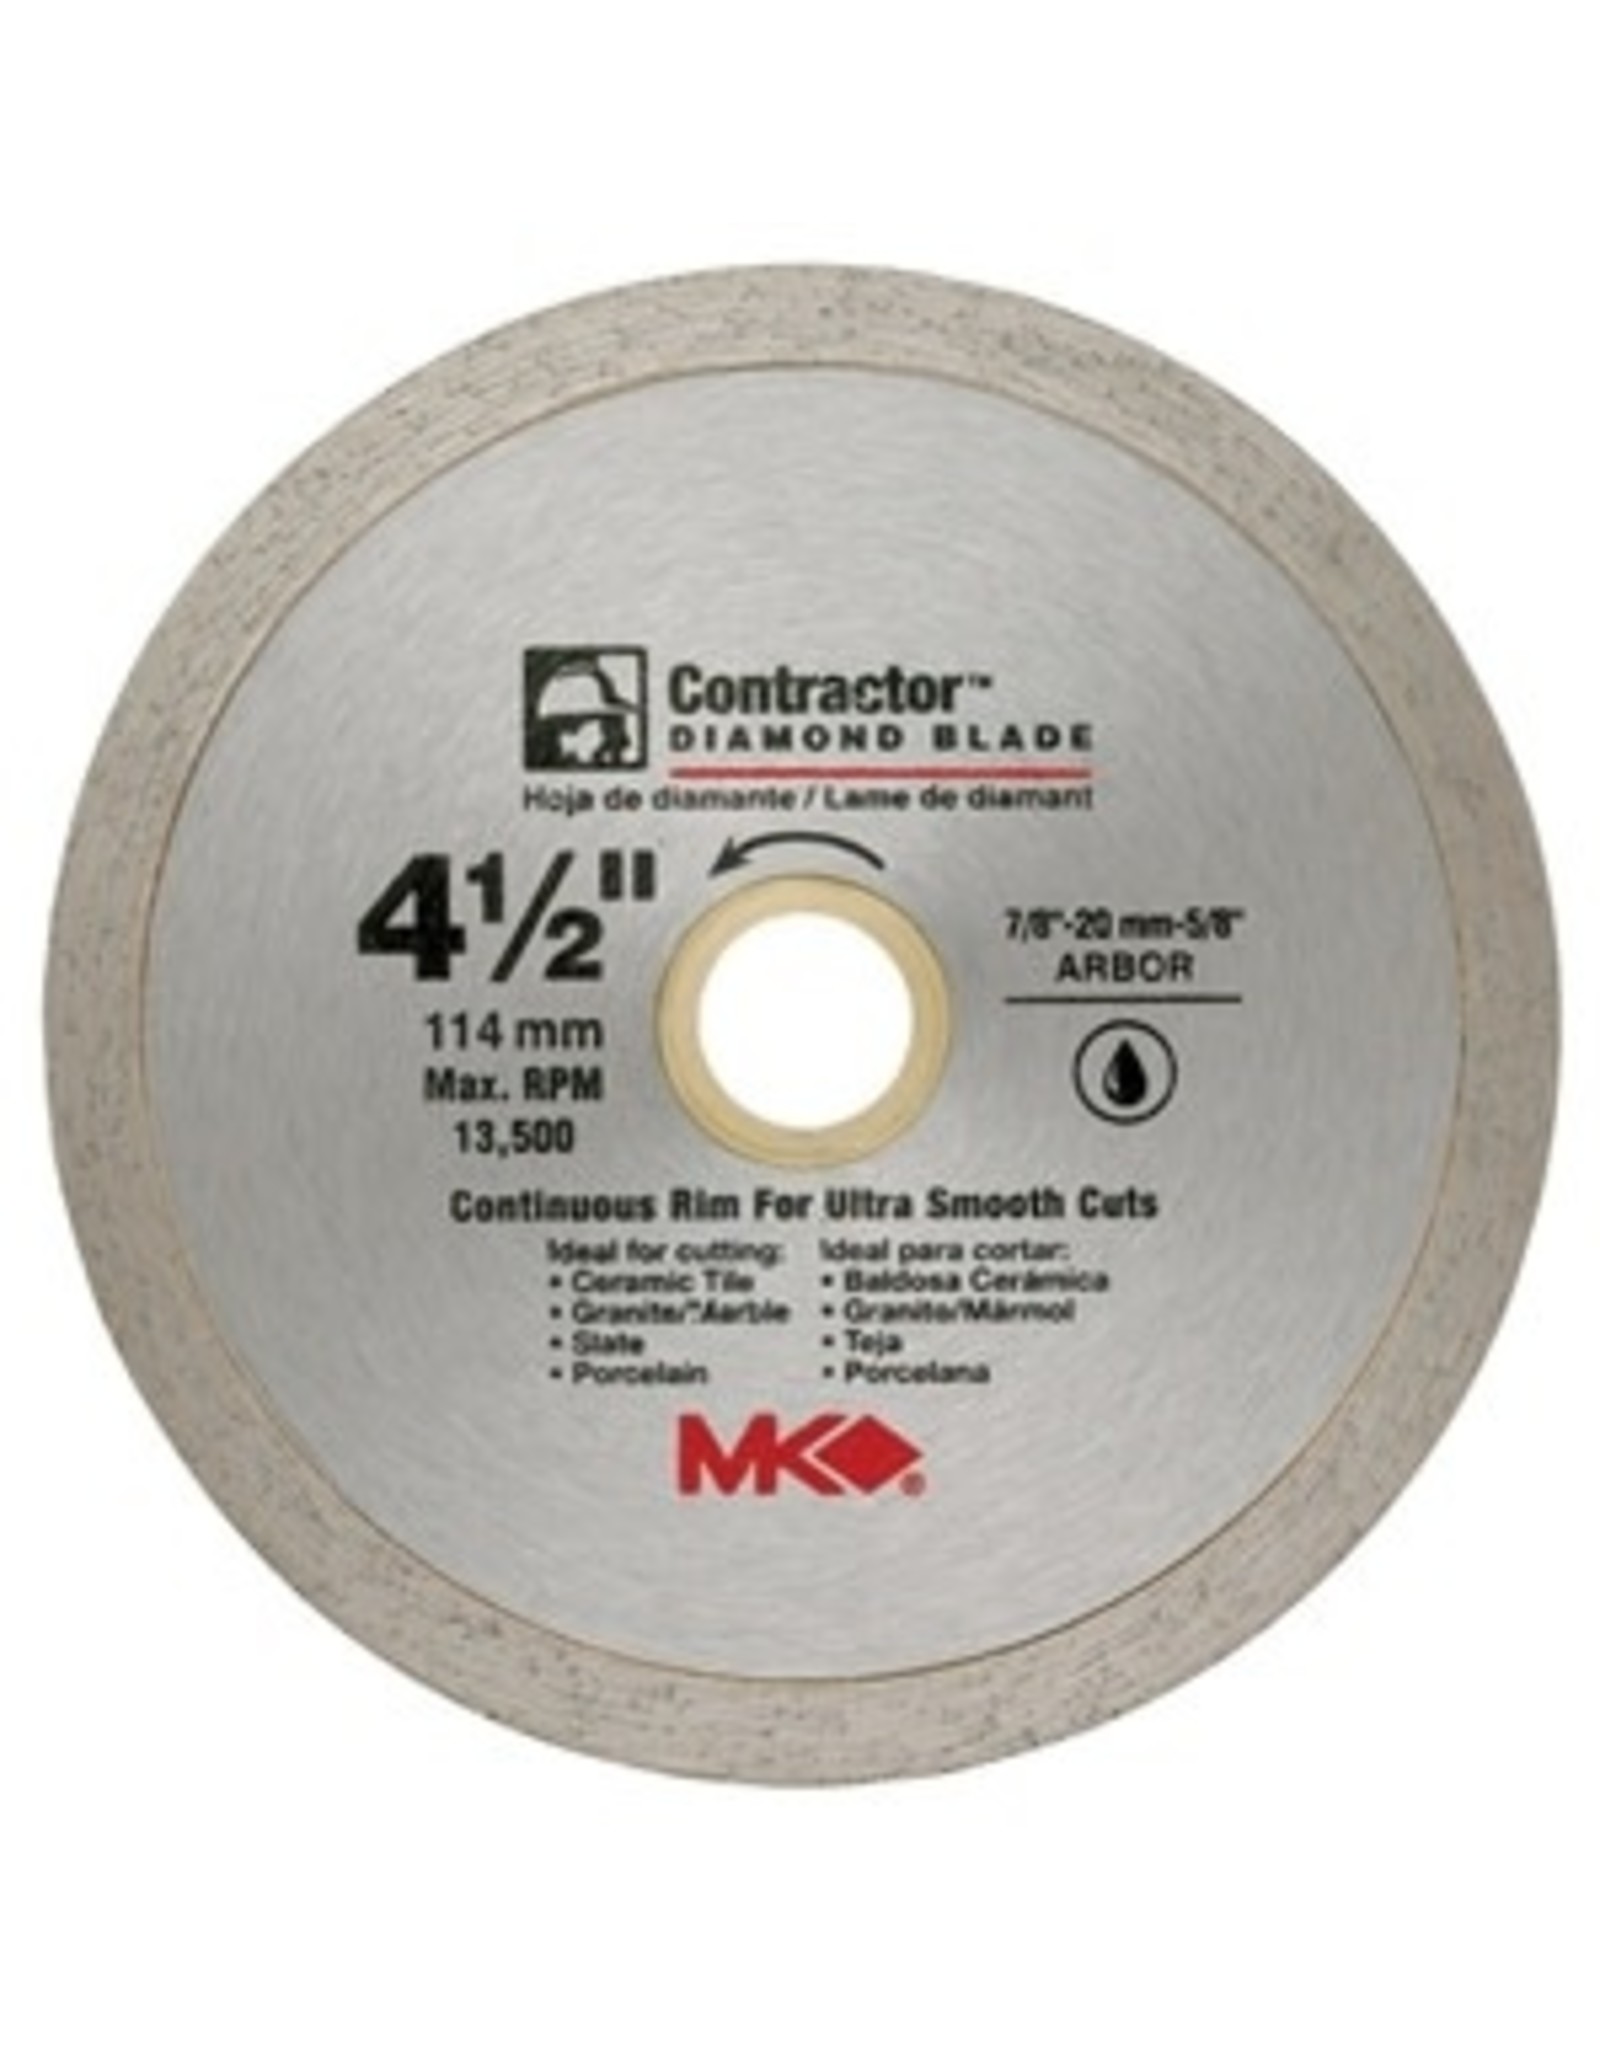 MK MK 167028 Circular Saw Blade, 4-1/2 in Dia, 7/8-20 to 5/8 Arbor, Diamond Cutting Edge*